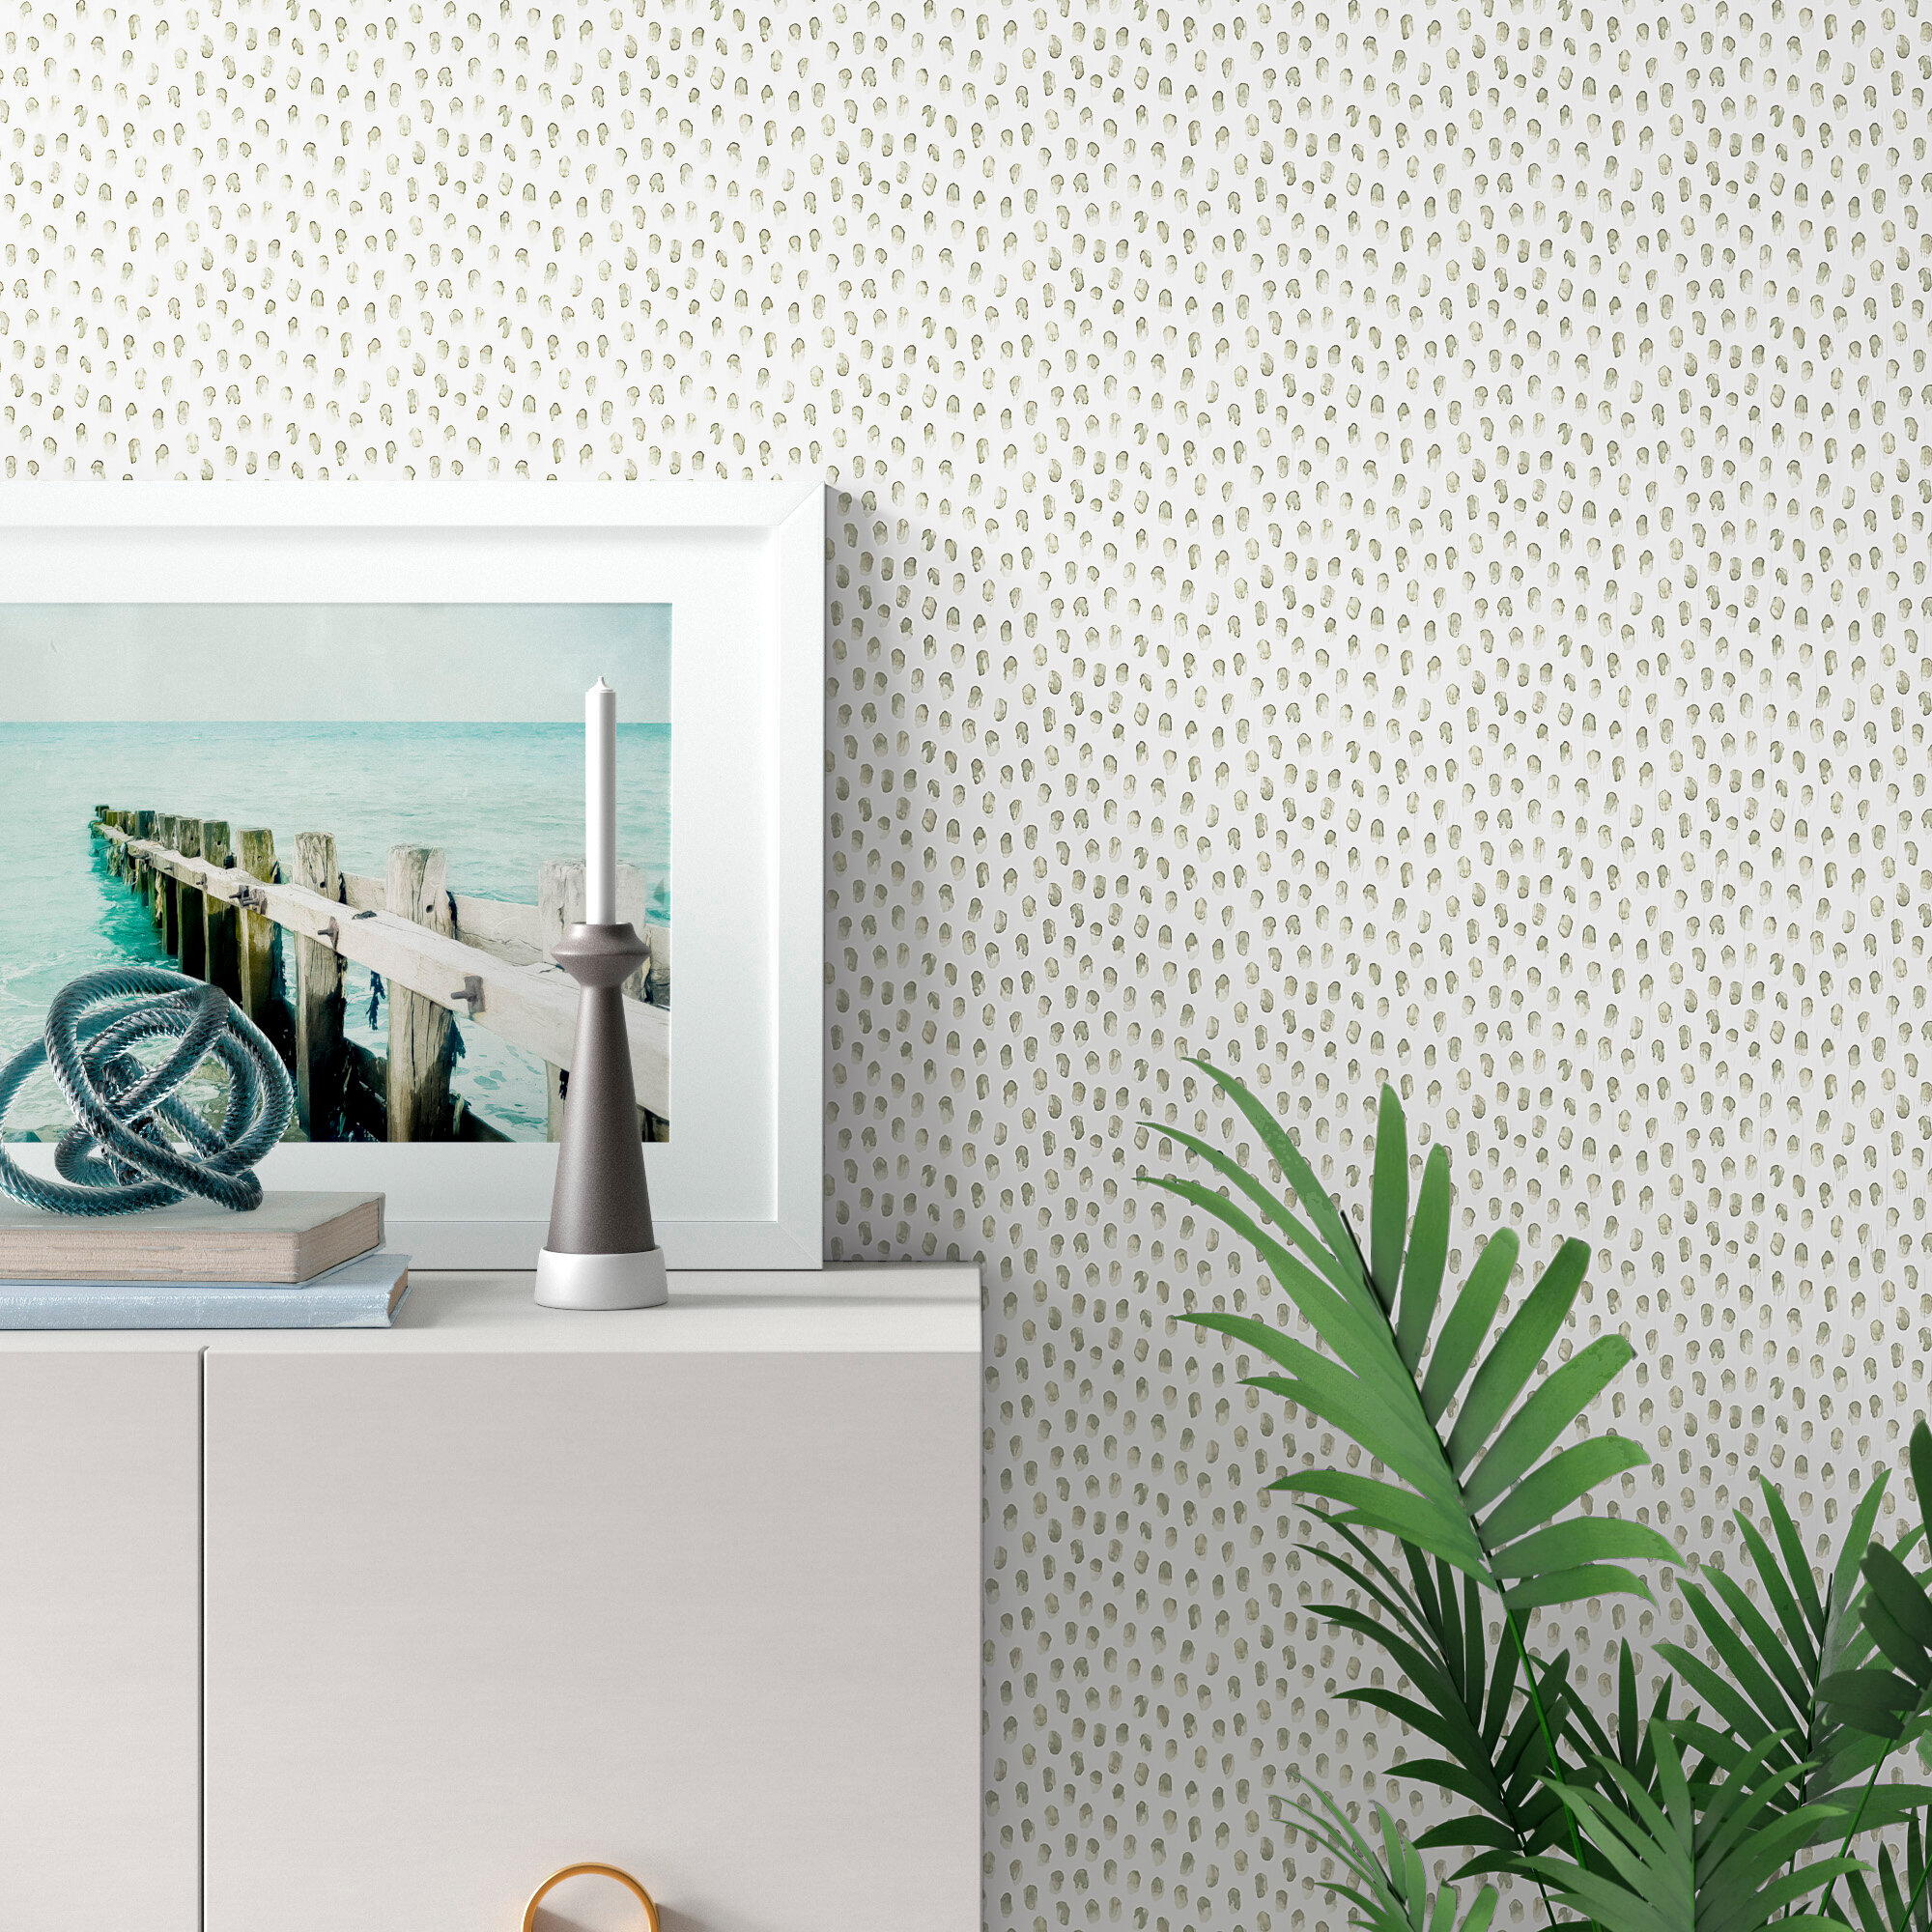 Polka Dot Plaid Wallpaper - SAMPLE ONLY